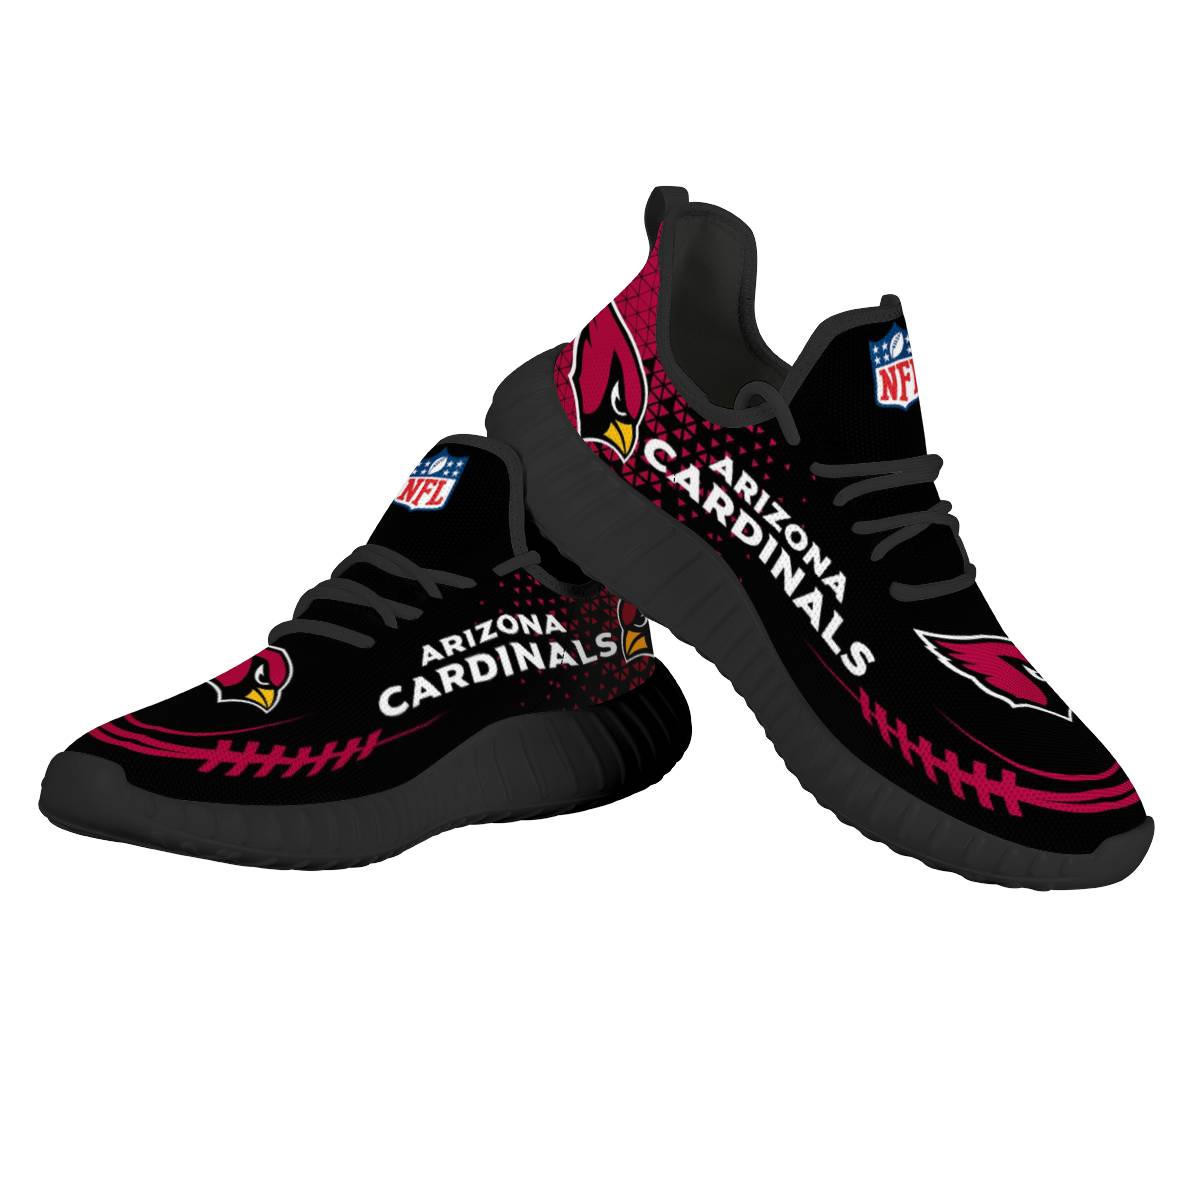 Women's Arizona Cardinals Mesh Knit Sneakers/Shoes 008